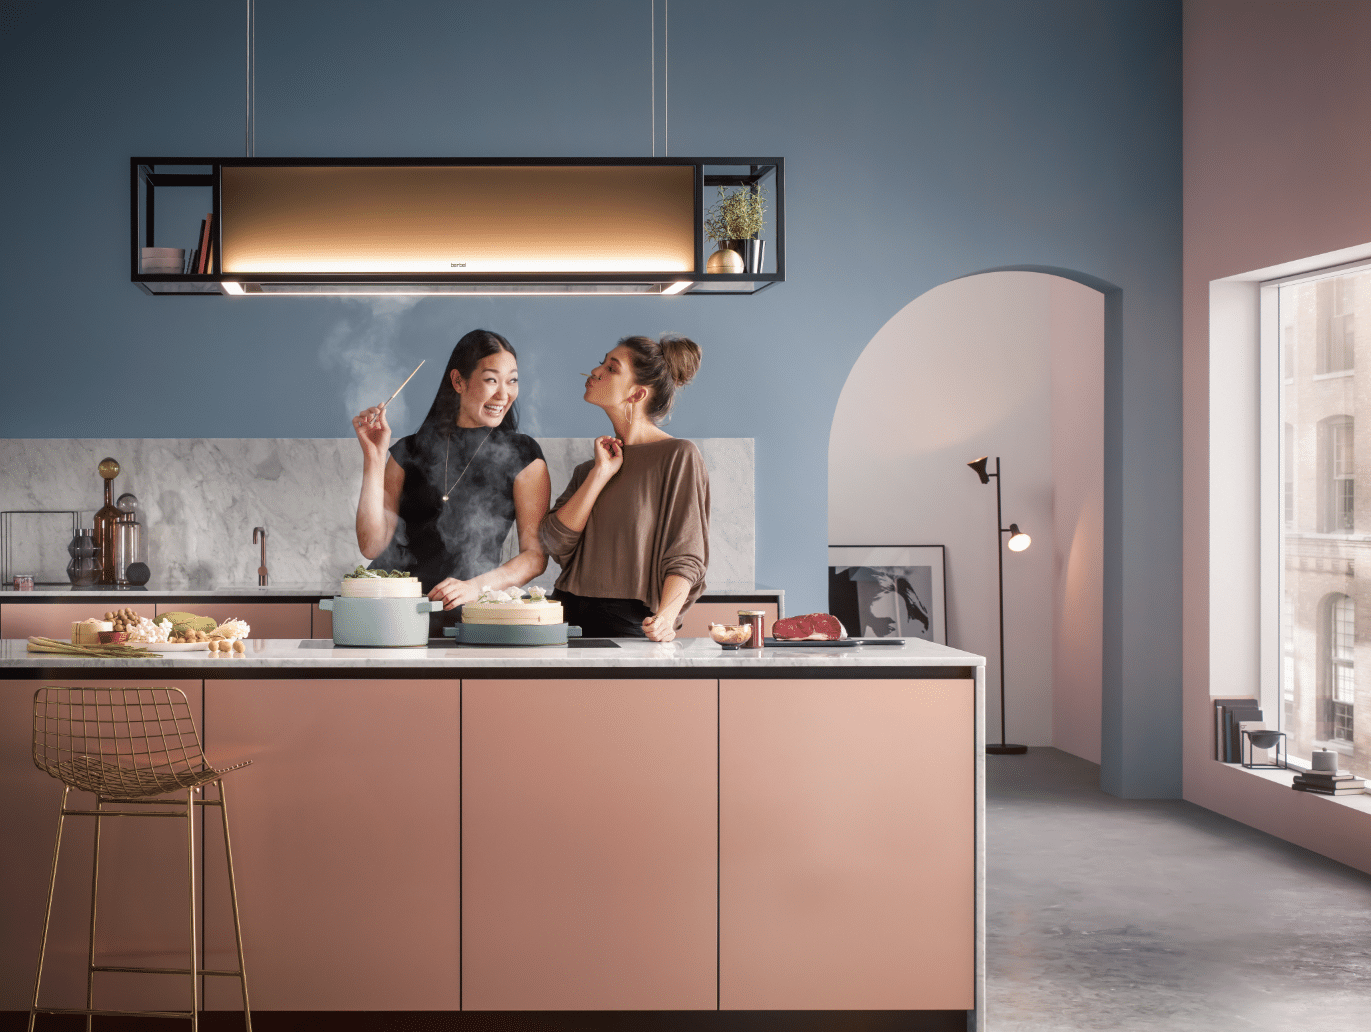 Zwei Frauen sind vergnügt beim Kochen in einer modernen Küche unter Verwendung eines beleuchteten berbel Dunstabzugs mit der Bezeichnung Deckenlifthaube Skyline Frame.